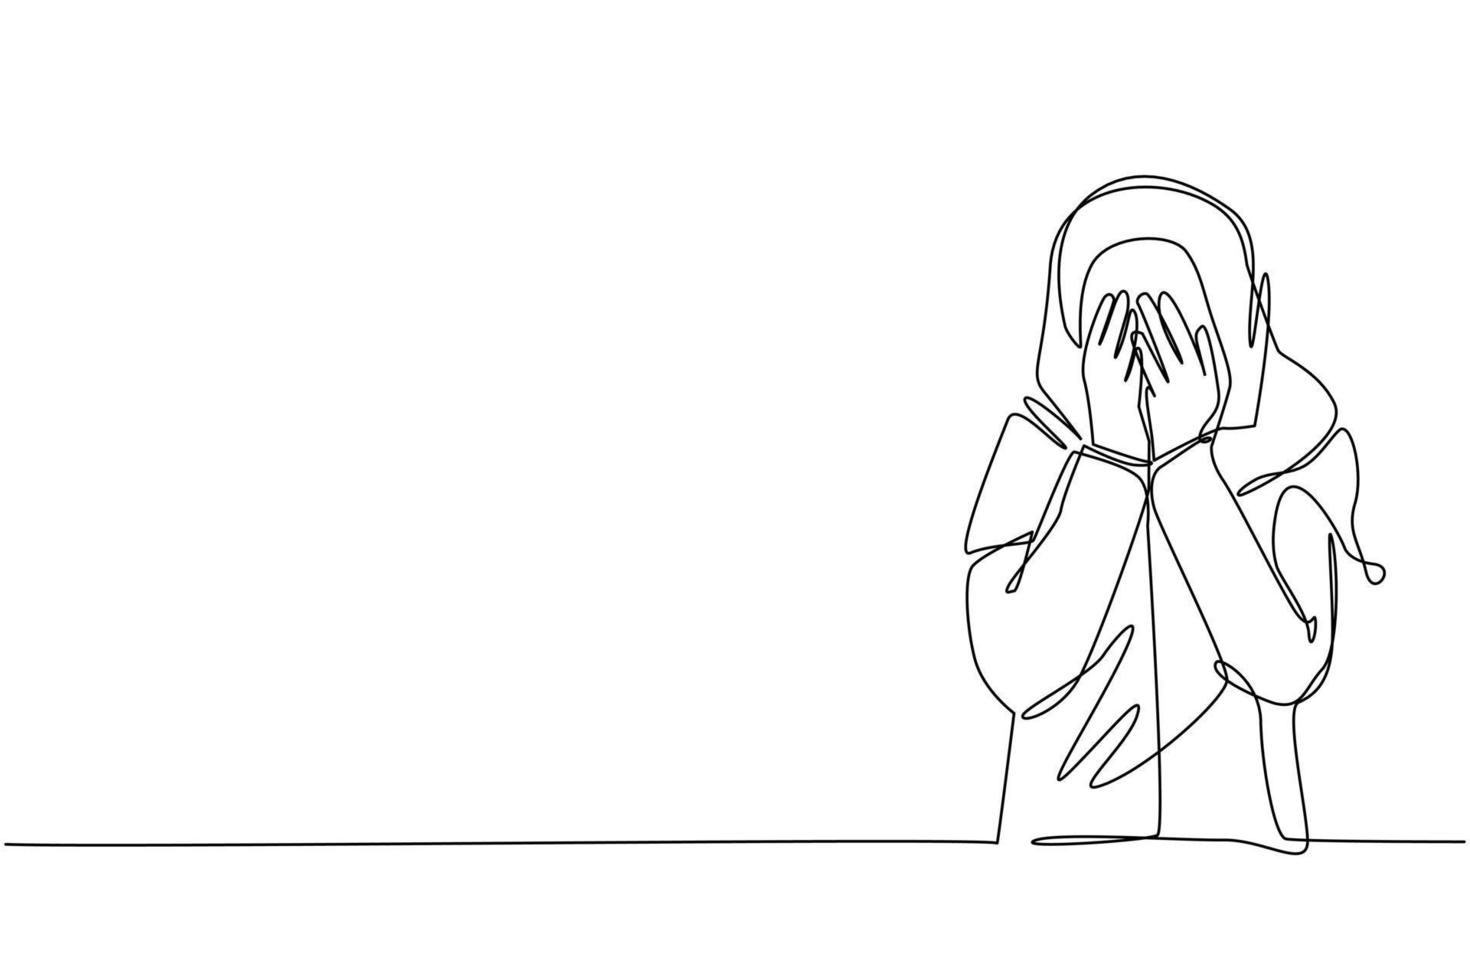 única linha contínua desenho jovem árabe fecha os olhos com as mãos por causa de desgosto e relutância em ver algo, medo ou tristeza. uma linha desenhar ilustração em vetor design gráfico